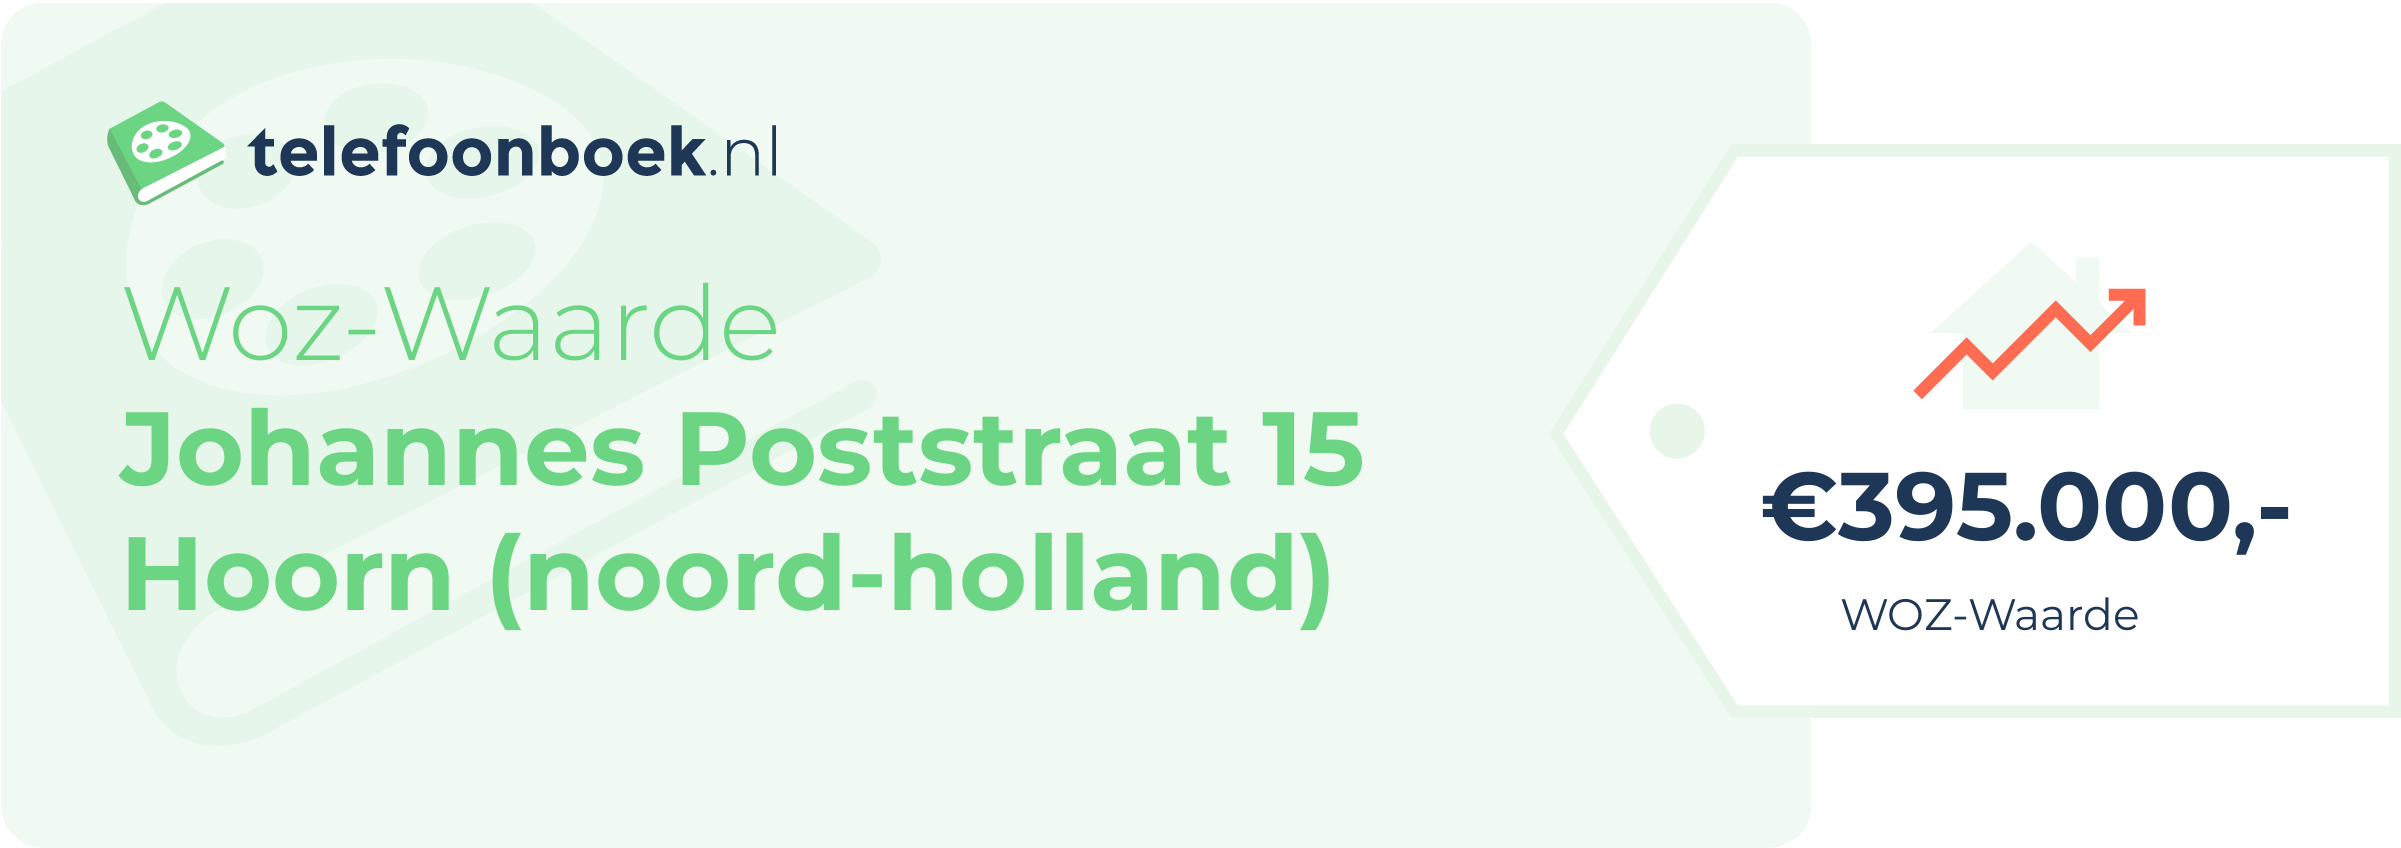 WOZ-waarde Johannes Poststraat 15 Hoorn (Noord-Holland)